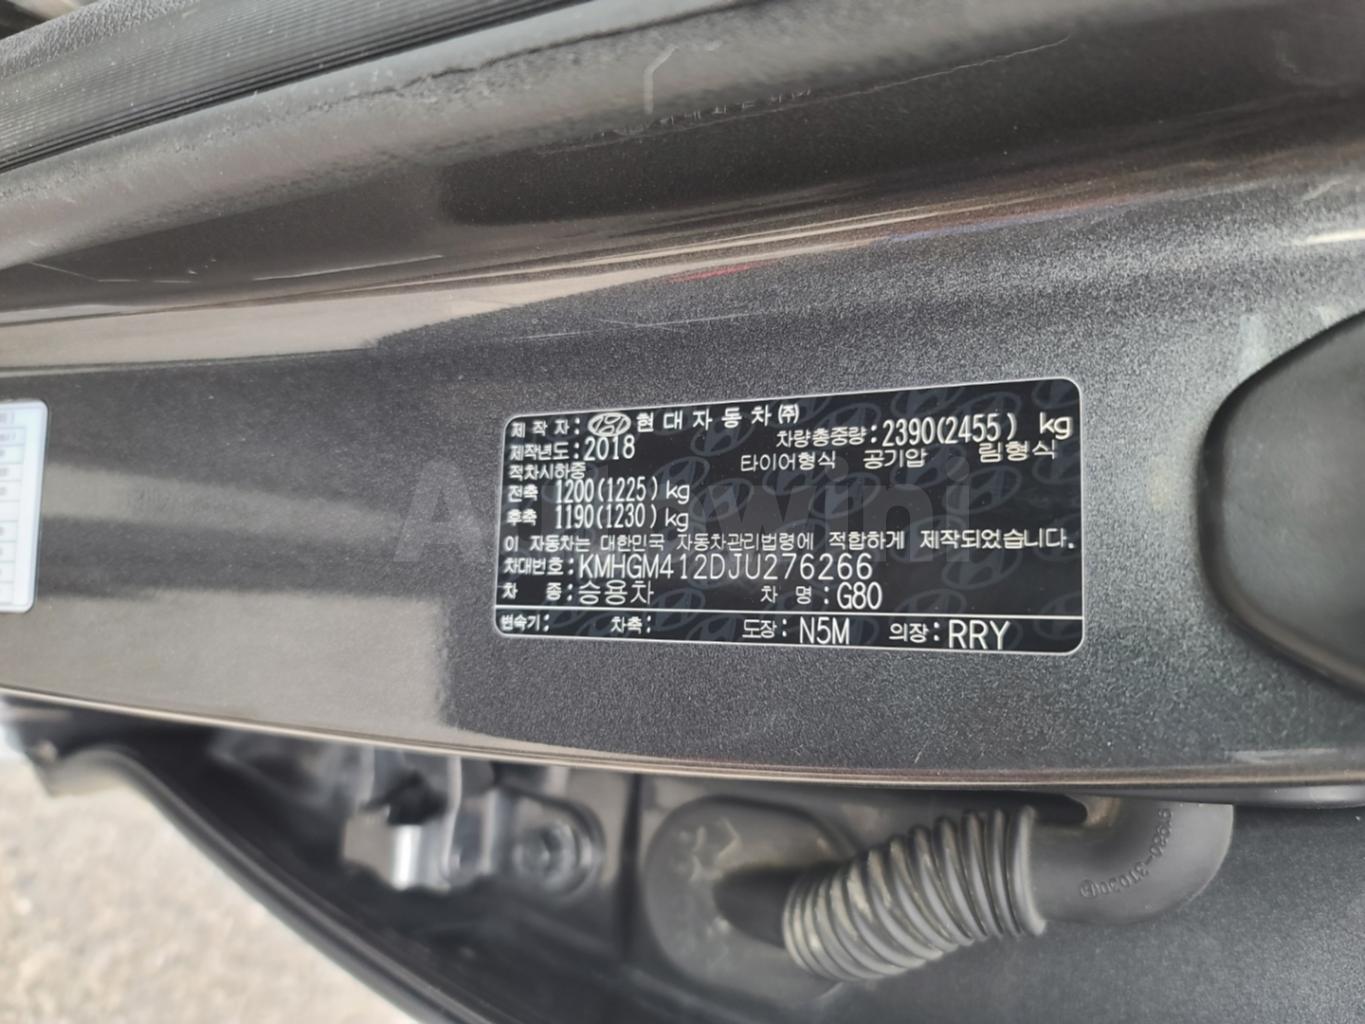 2018 HYUNDAI GENESIS G80 ACCIDENT FREE , SAUDI CAR. - 37